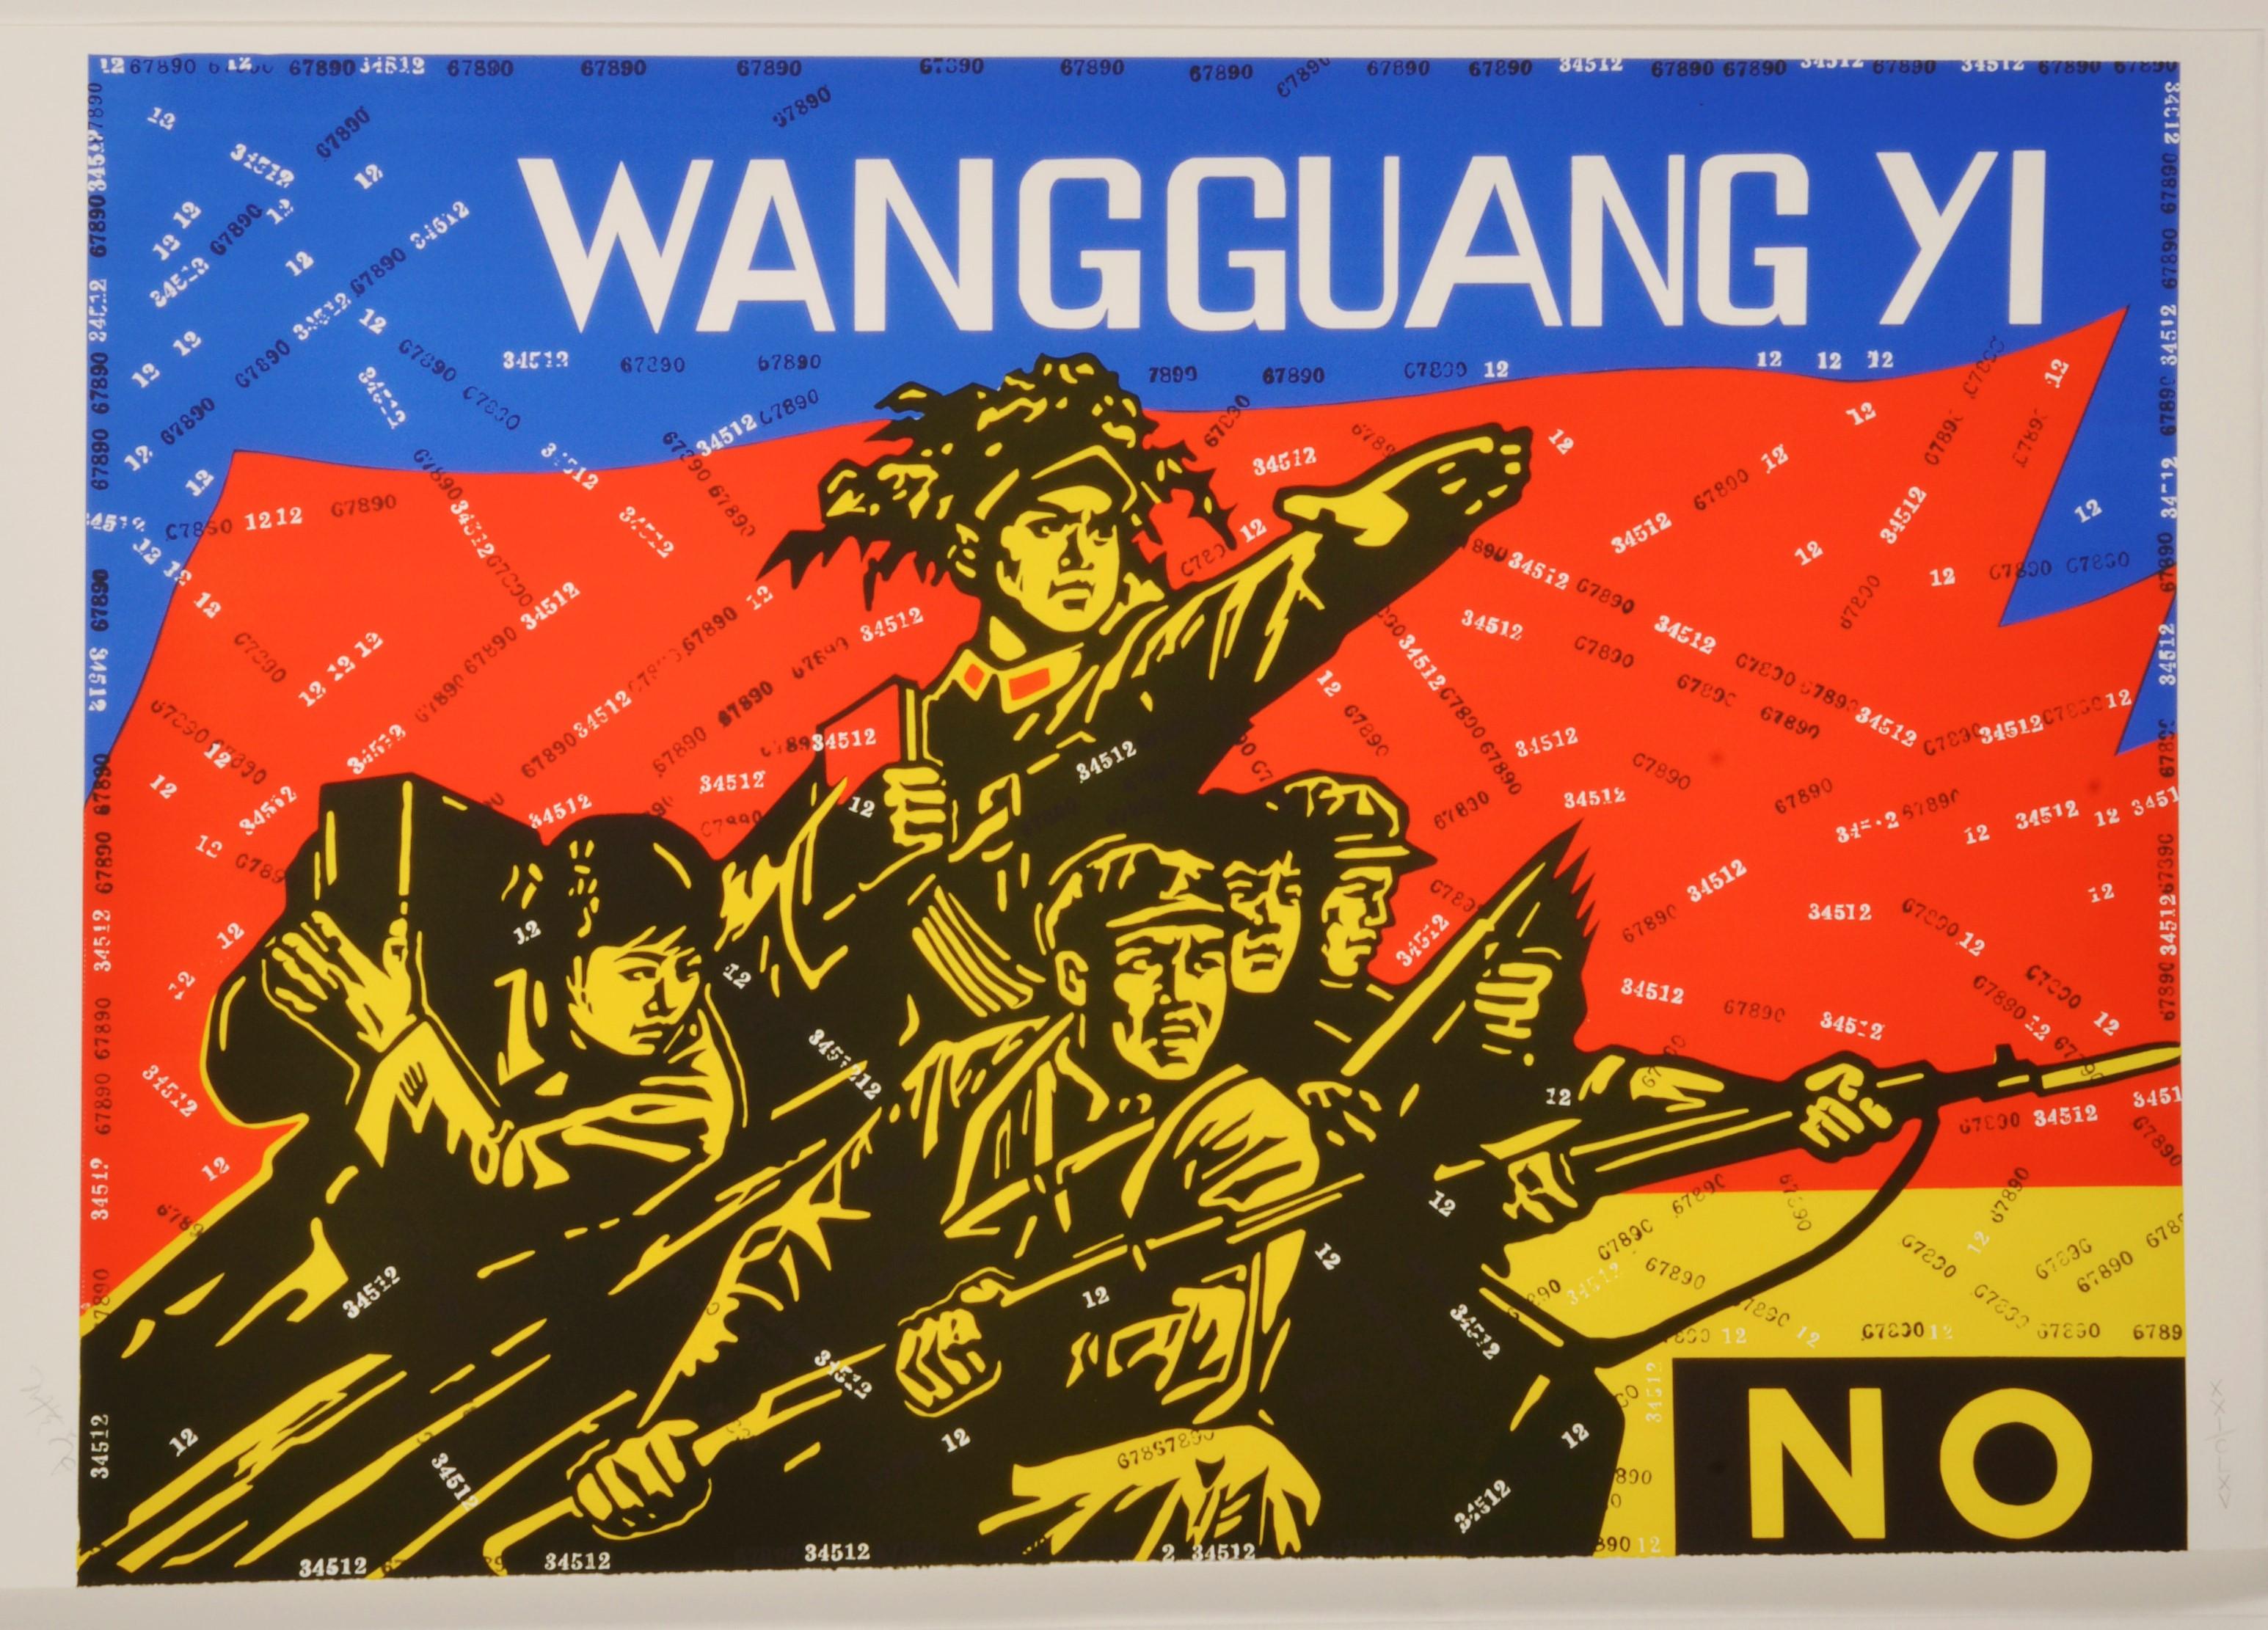 wang guangyi artwork